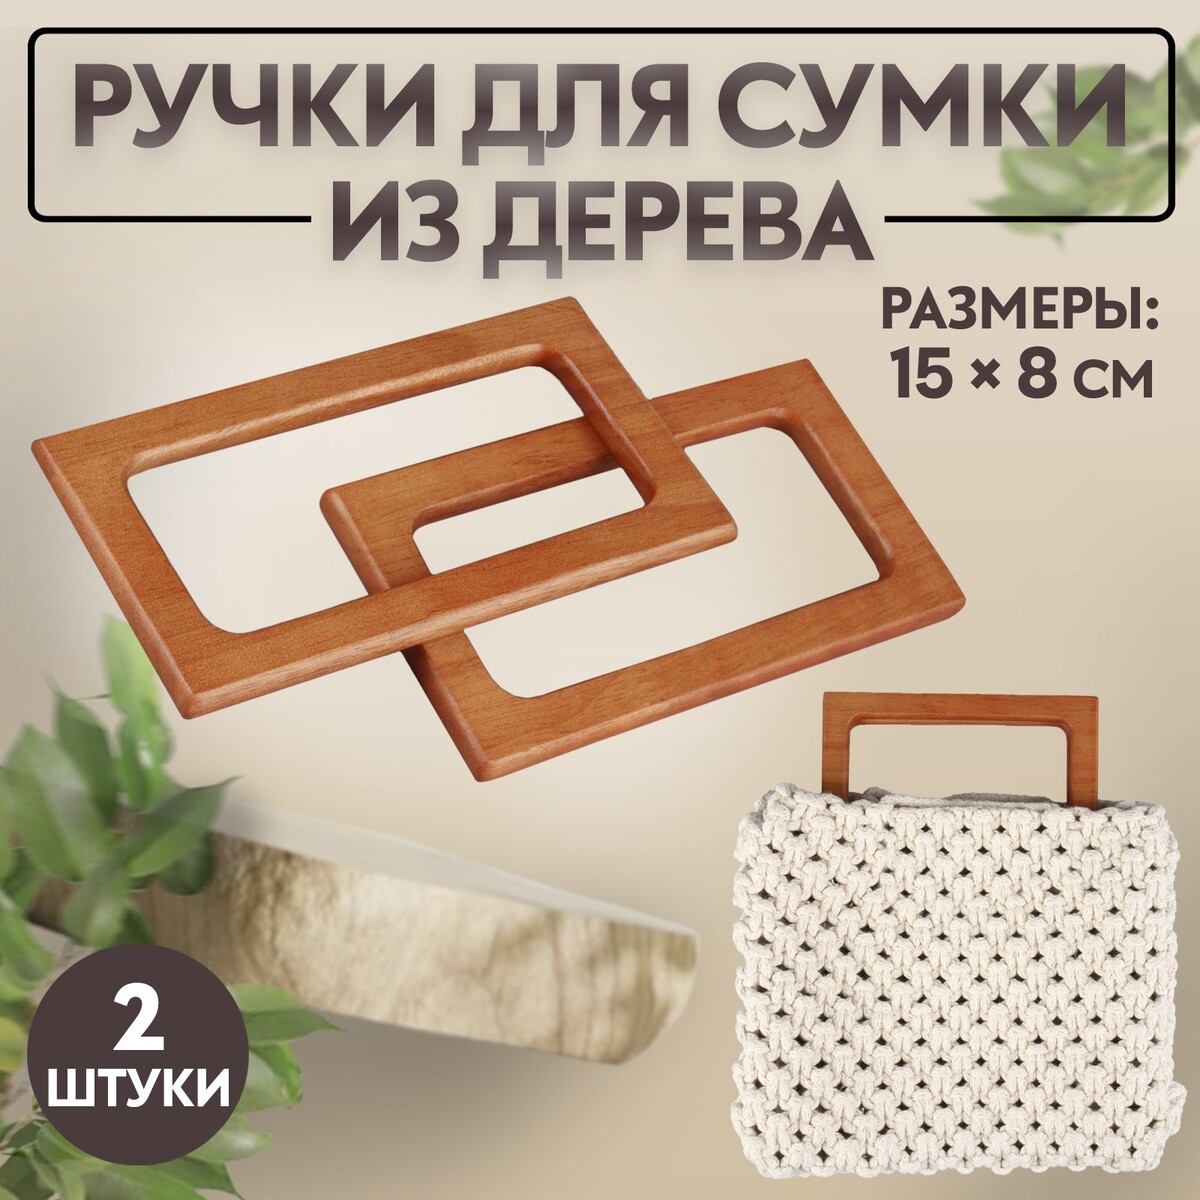 Ручки для сумки деревянные, 15 × 8 см, 2 шт, цвет светло-коричневый ручки для сумки деревянные d 18 × 14 5 9 × 10 5 см 2 шт коричневый